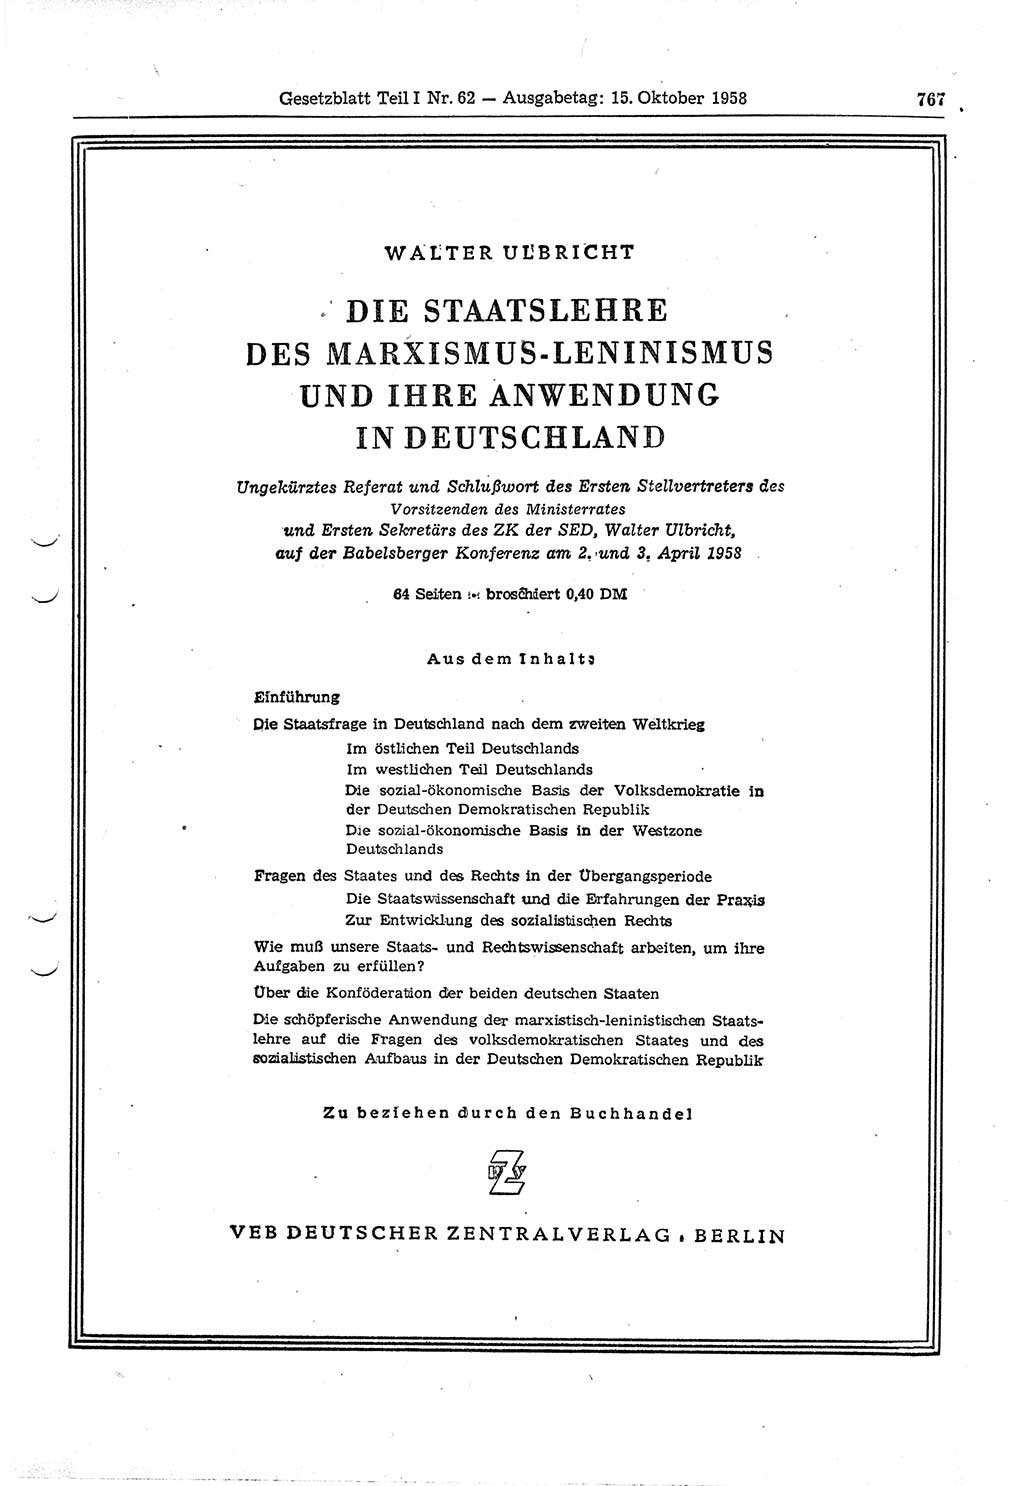 Gesetzblatt (GBl.) der Deutschen Demokratischen Republik (DDR) Teil Ⅰ 1958, Seite 767 (GBl. DDR Ⅰ 1958, S. 767)